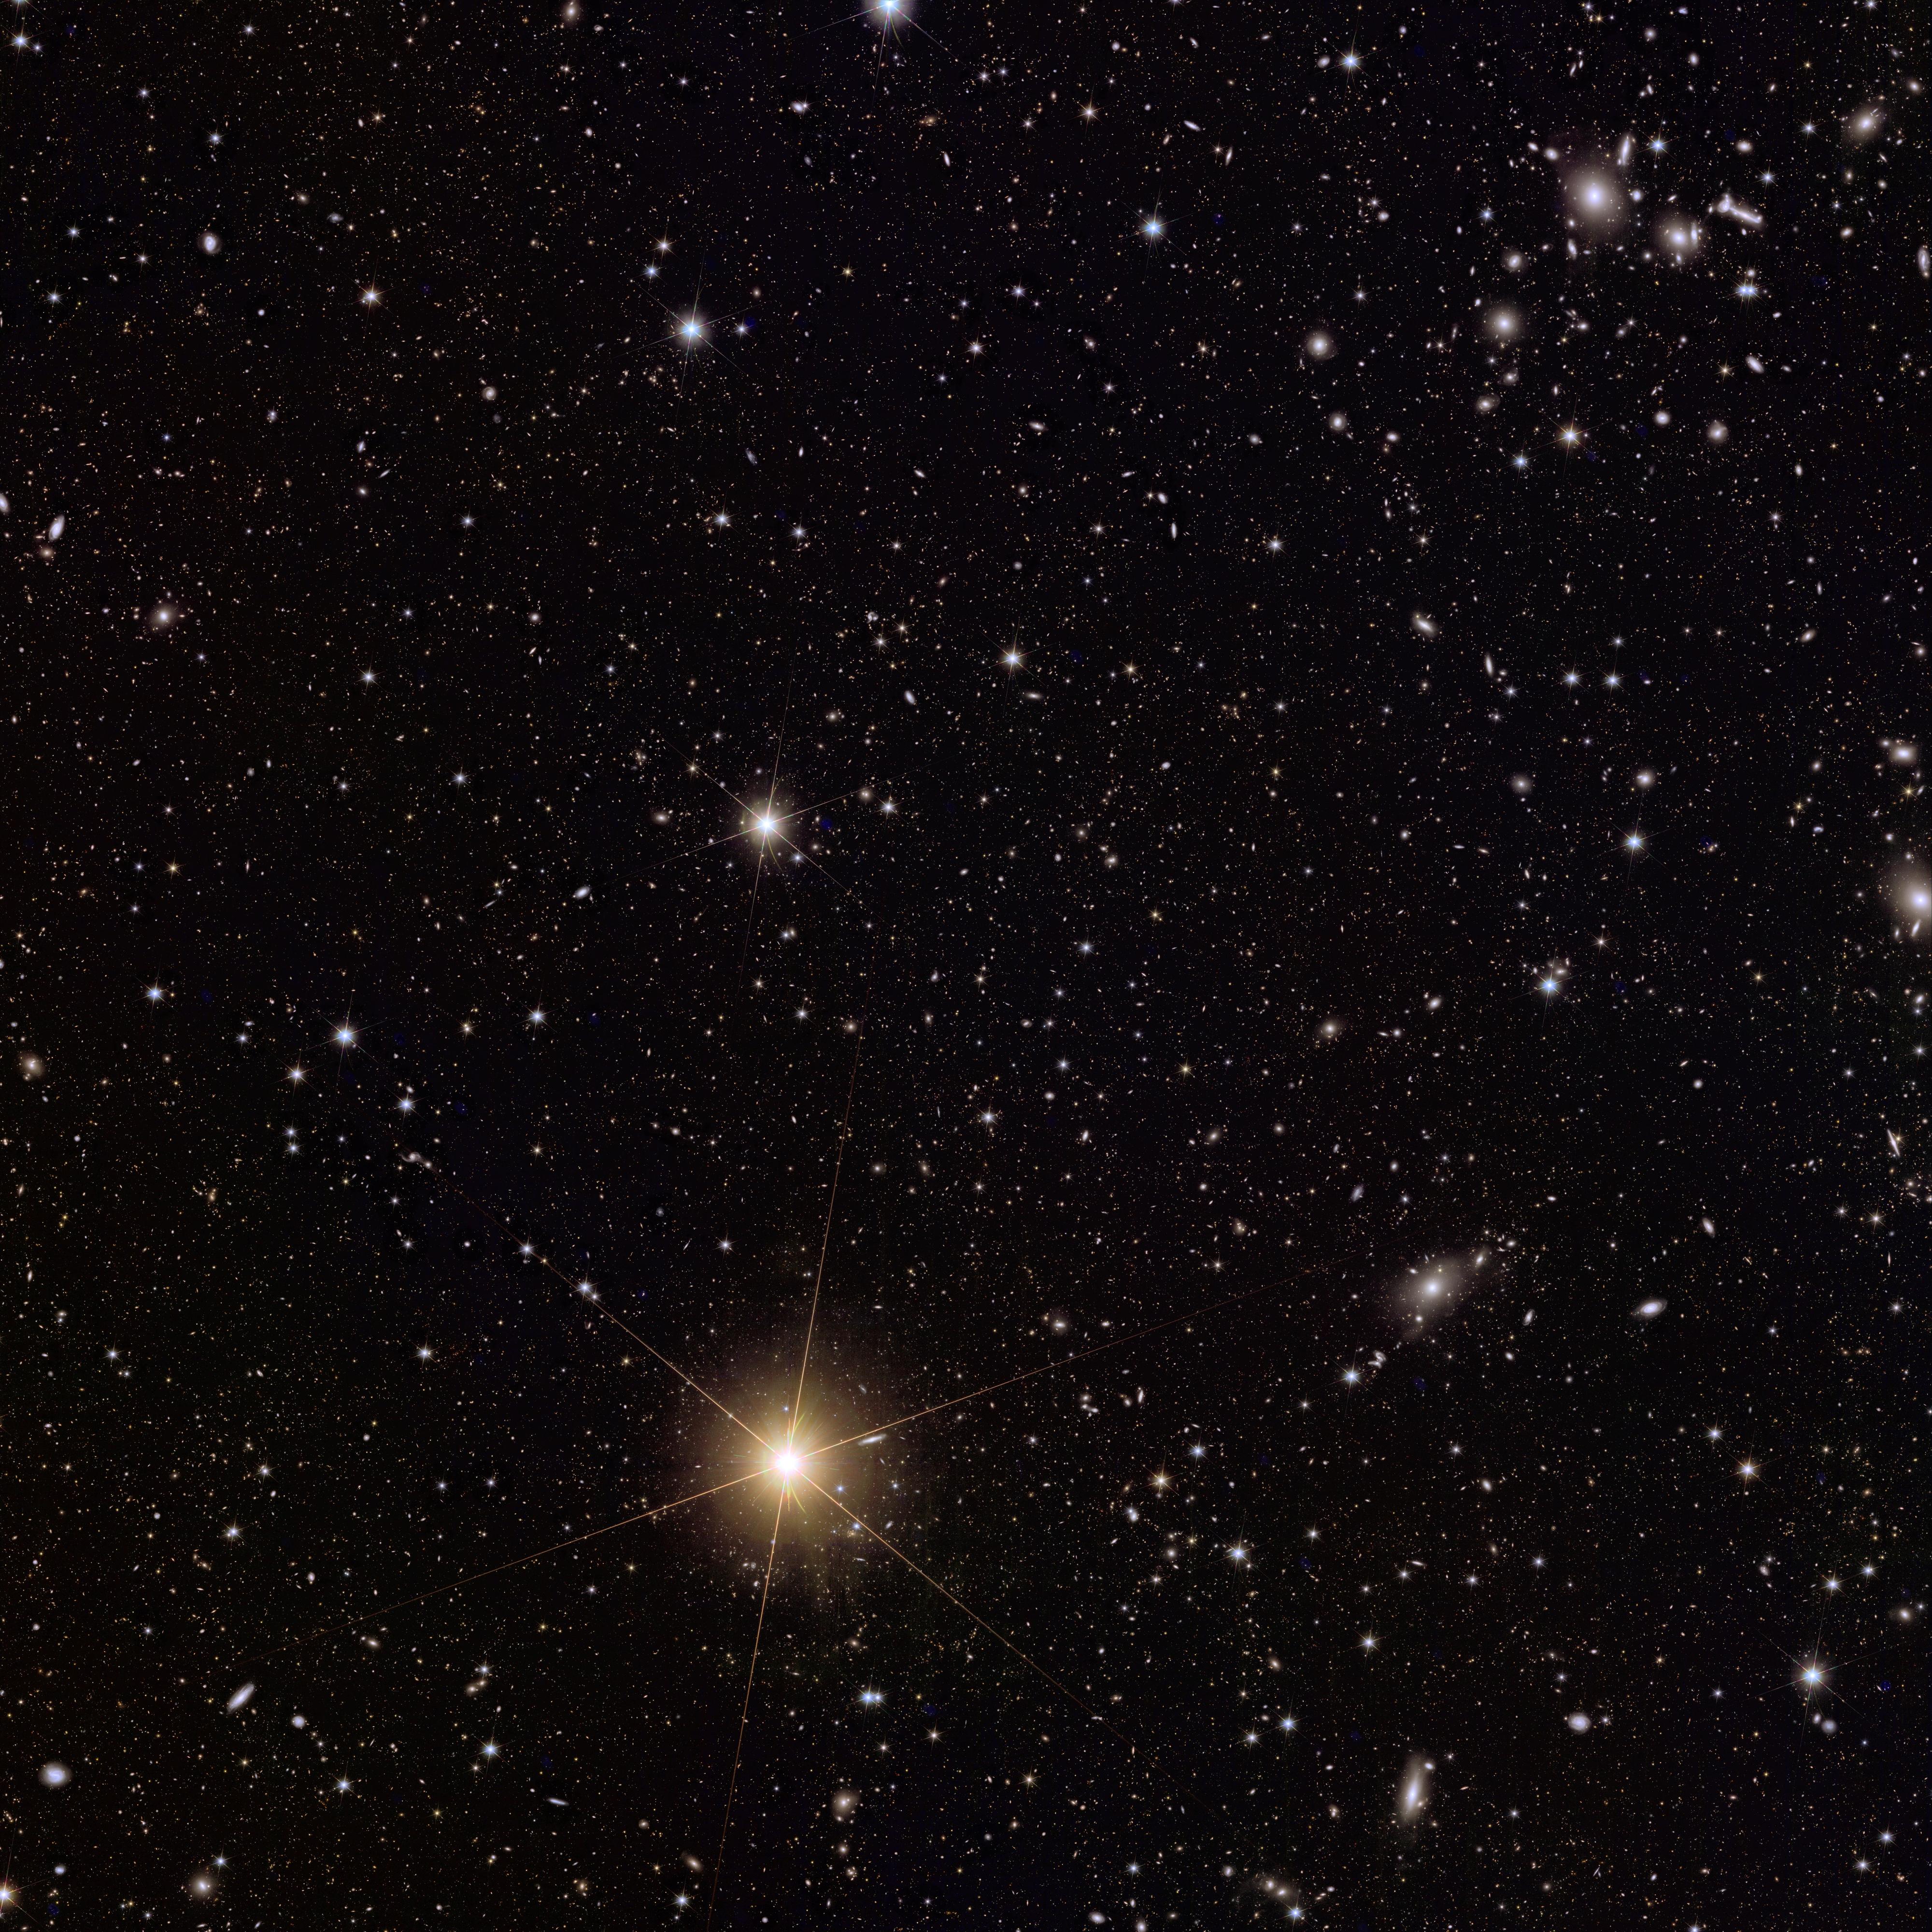 Cette vue complète d'Abell 2764 et de ses environs permet aux scientifiques de déterminer le rayon de l'amas et de voir sa périphérie avec des galaxies lointaines. Ces observations aident également les scientifiques à explorer plus avant les galaxies des âges sombres du cosmos, comme c'est le cas pour Abell 2390. [ESA/Euclid/Euclid Consortium/NASA - image processing by J.-C. Cuillandre (CEA Paris-Saclay), G. Anselmi; CC BY-SA 3.0 IGO]